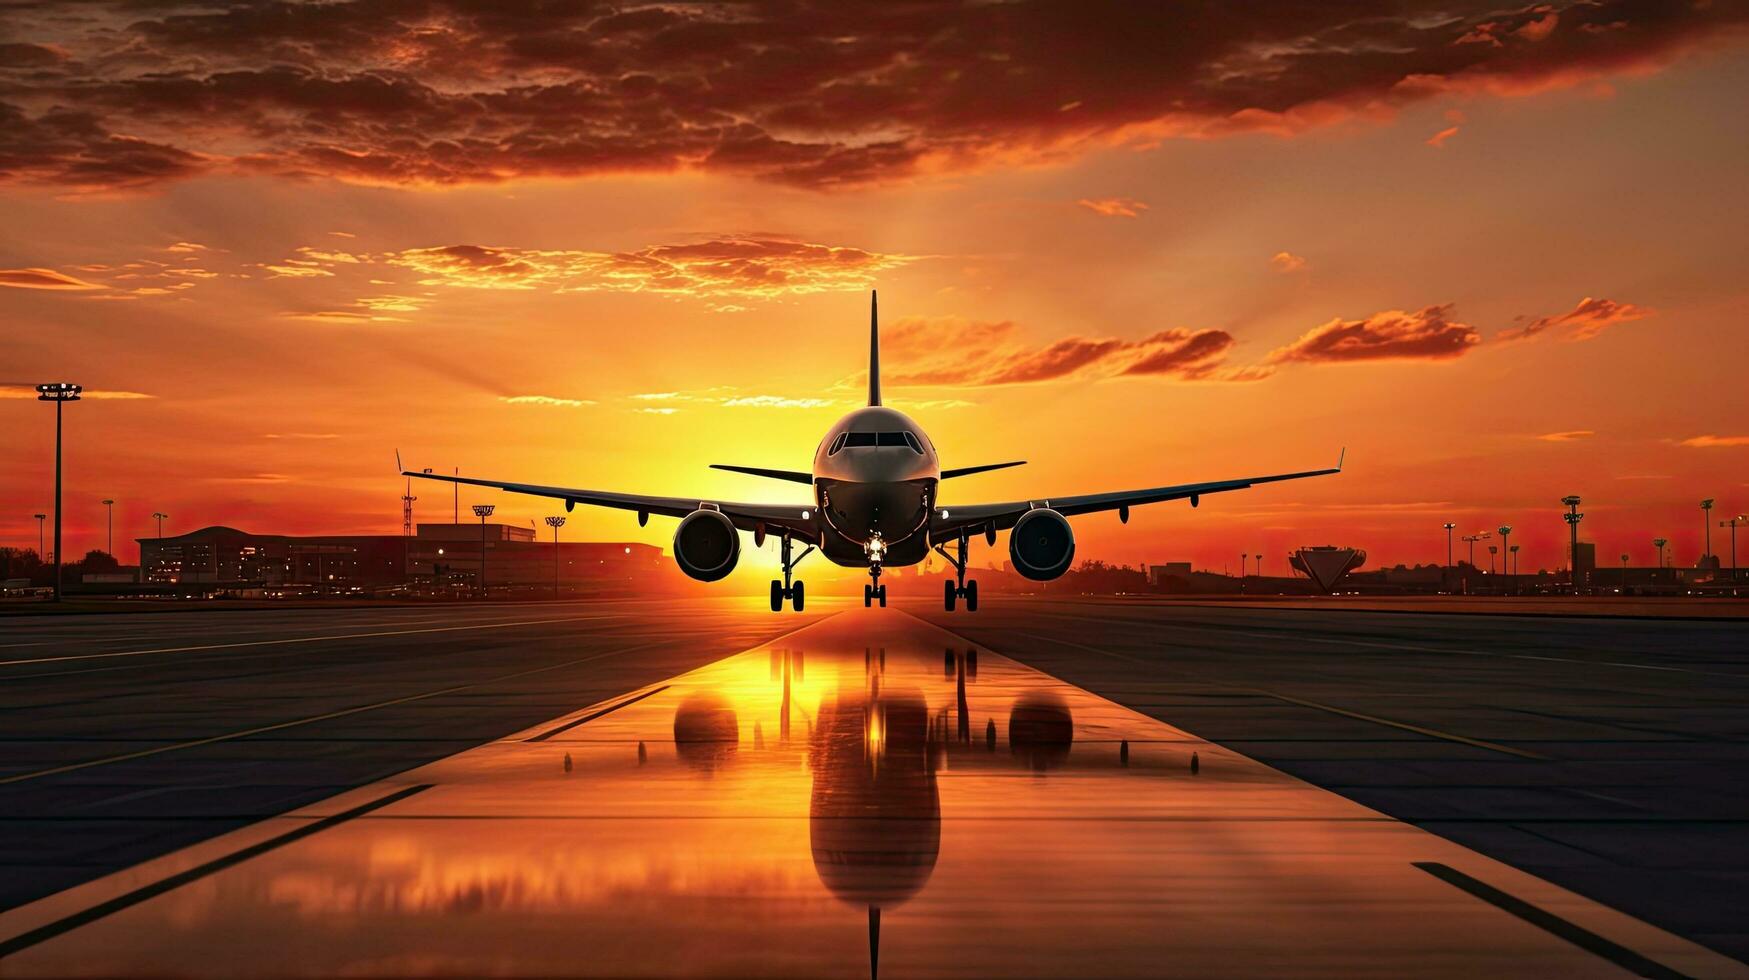 avión aterrizaje a aeropuerto durante puesta de sol con silueta foto